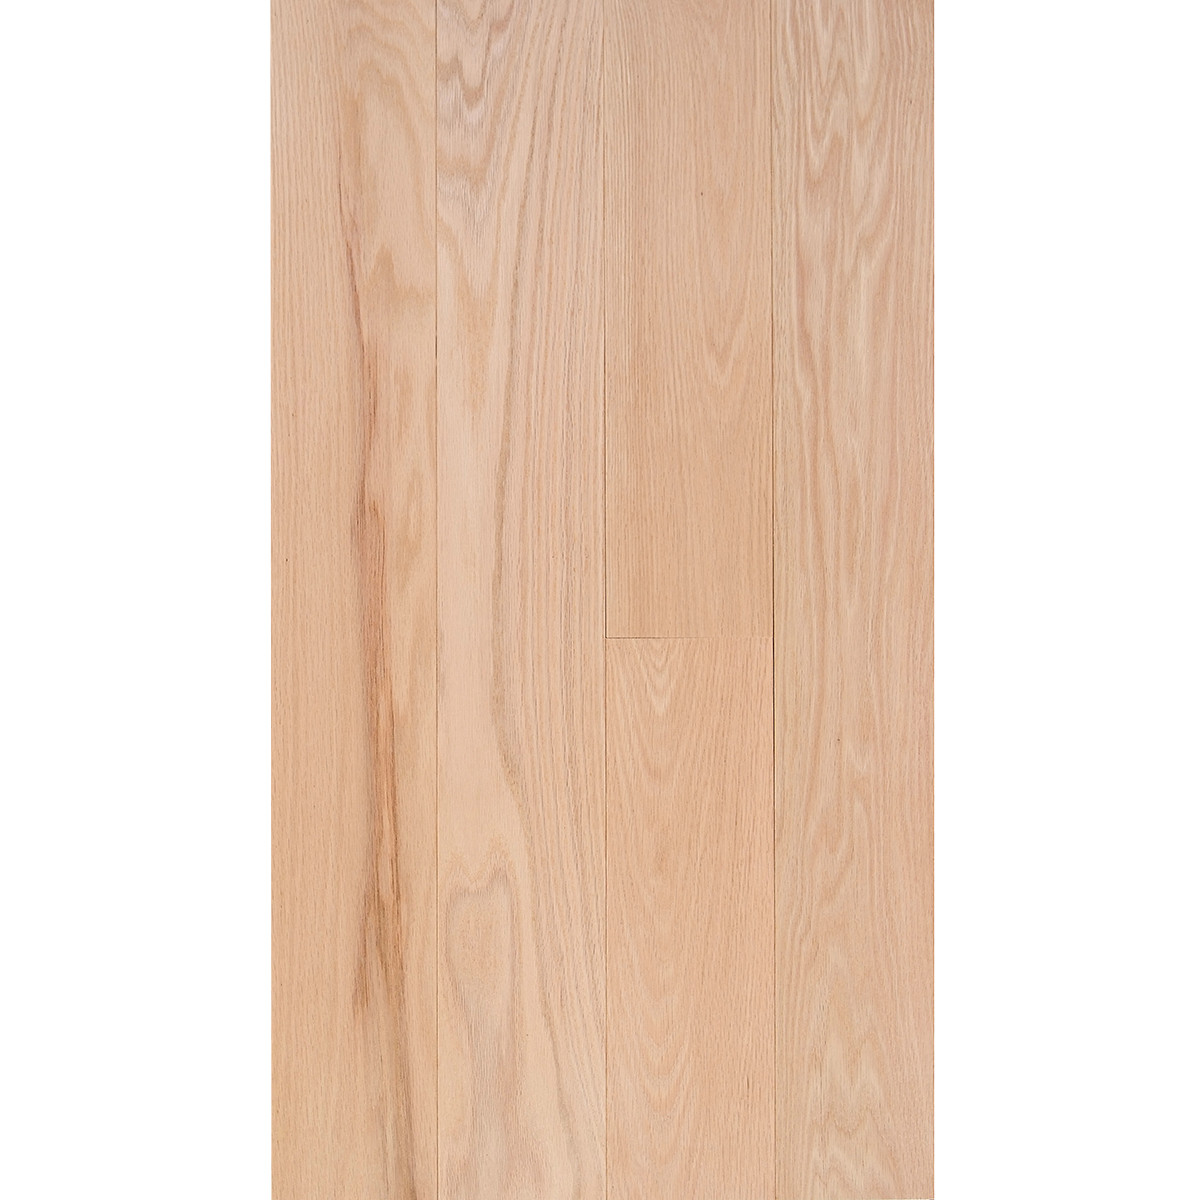 22 Stylish 2 1 4 Red Oak Hardwood Flooring 2024 free download 2 1 4 red oak hardwood flooring of red oak 3 4 x 5 select grade flooring in fs 5 redoak select em flooring